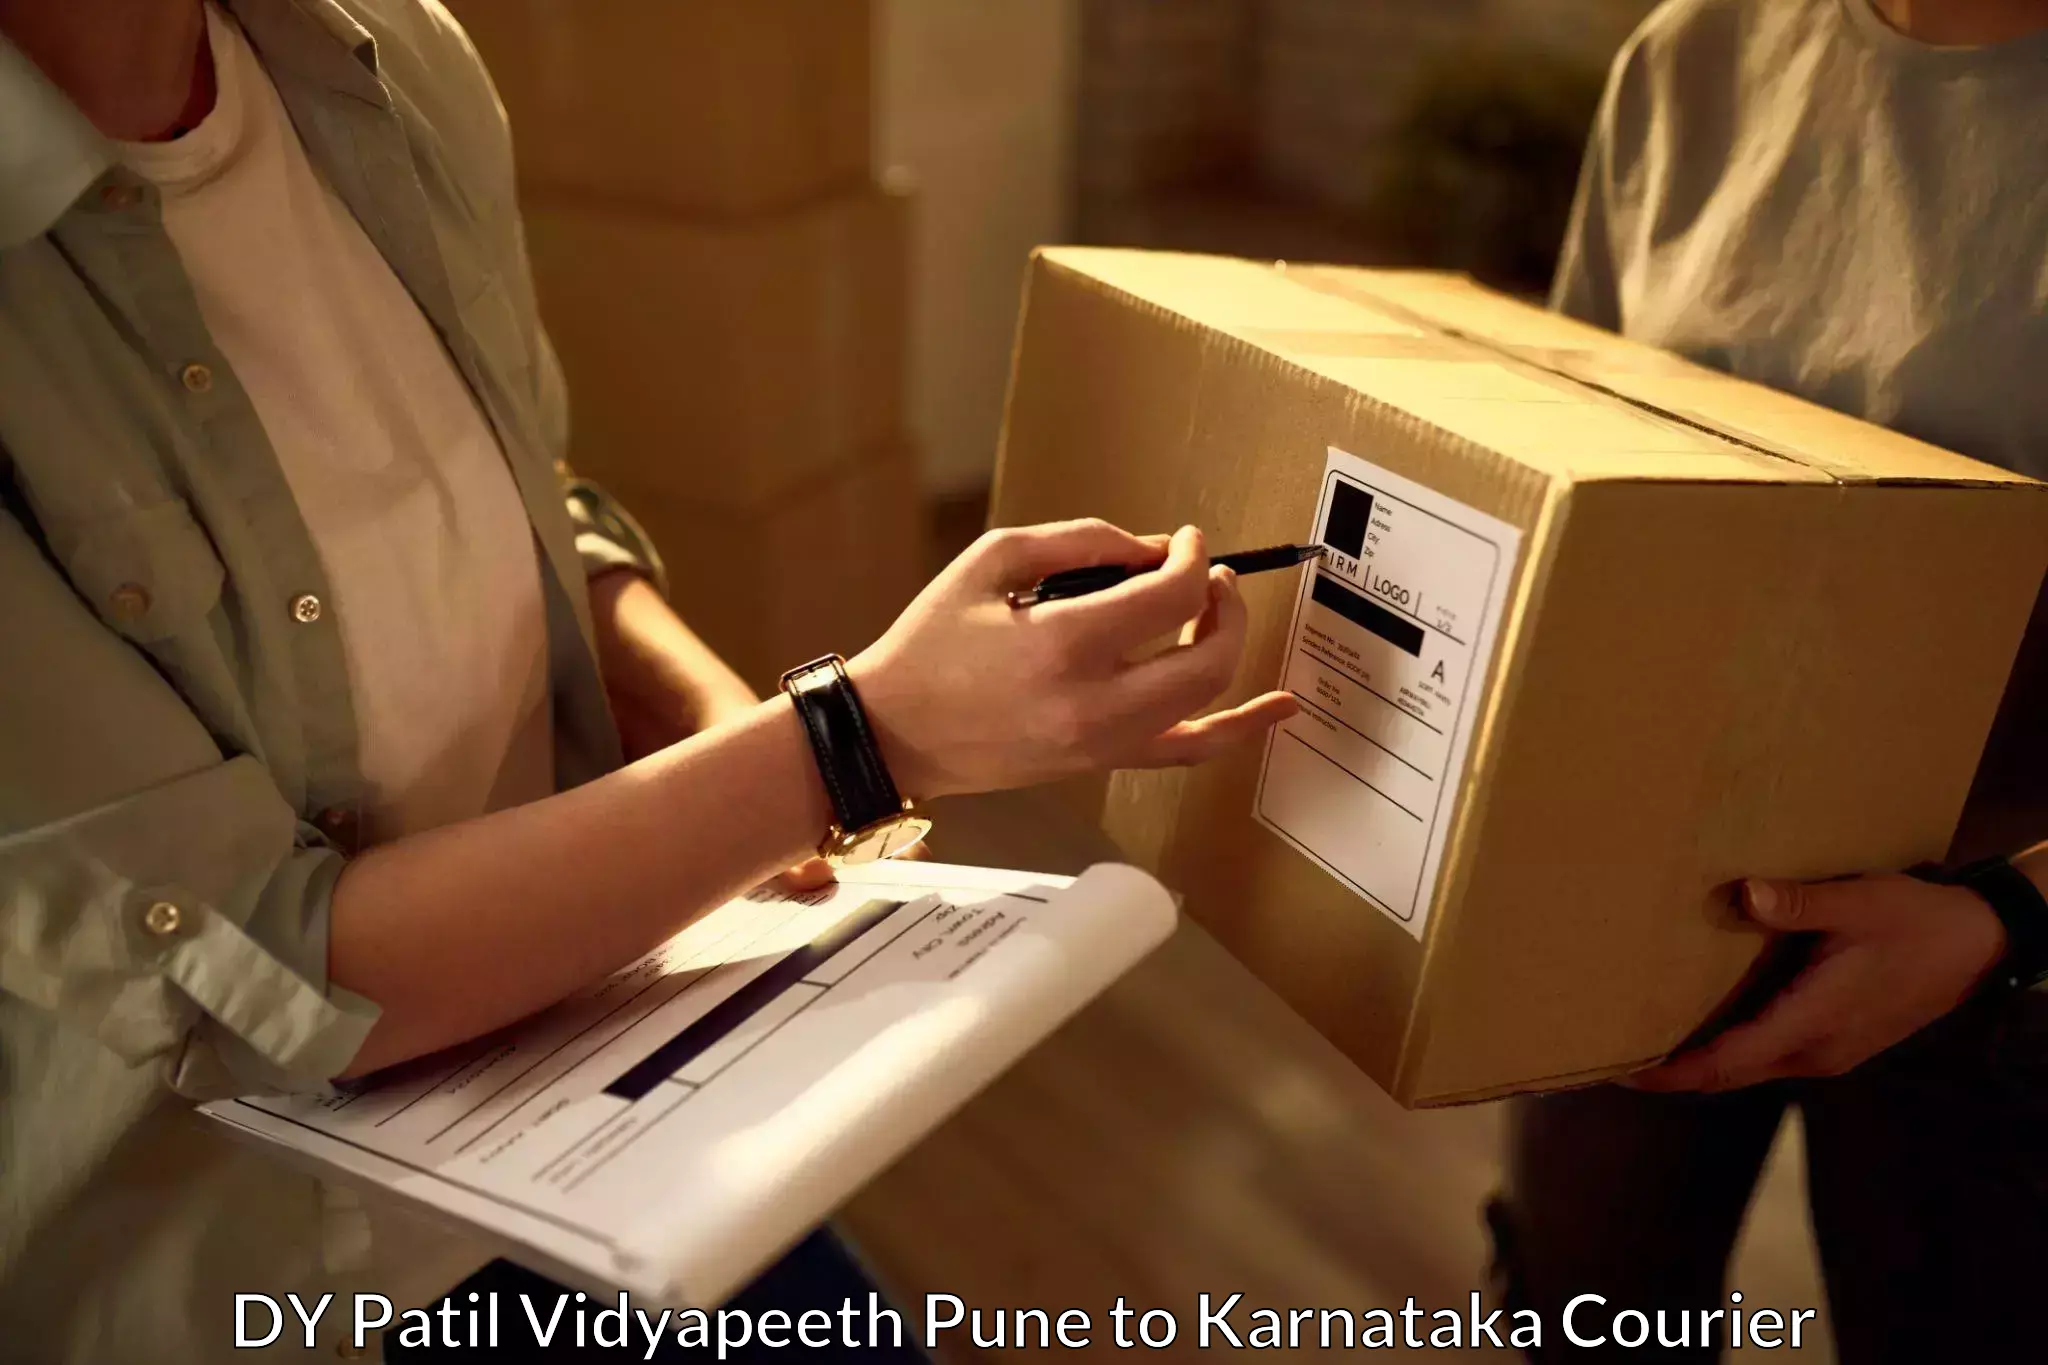 Express logistics providers DY Patil Vidyapeeth Pune to Karnataka